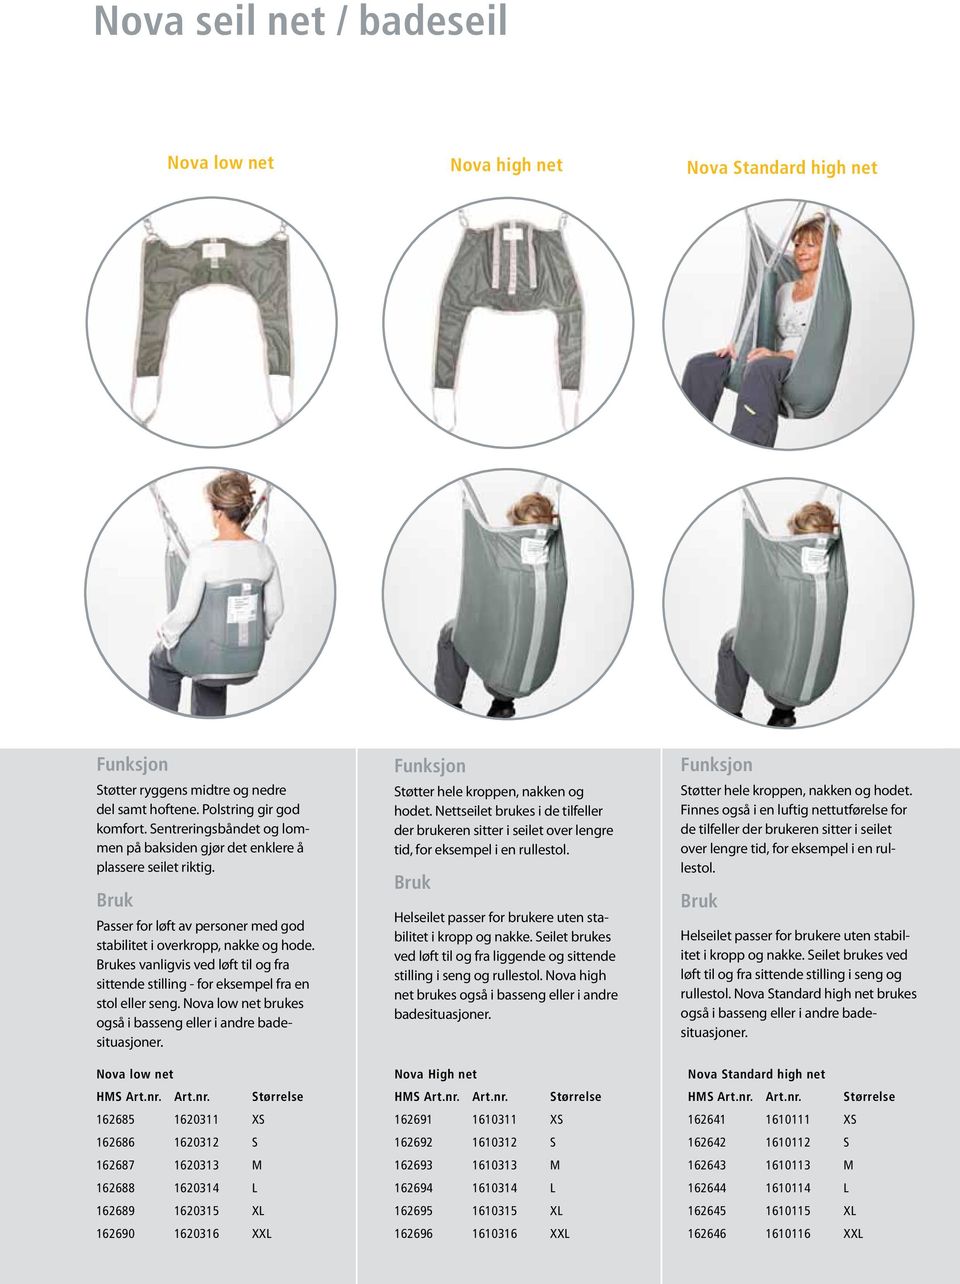 rukes vanligvis ved løft til og fra sittende stilling - for eksempel fra en stol eller seng. Nova low net brukes også i basseng eller i andre badesituasjoner. Støtter hele kroppen, nakken og hodet.